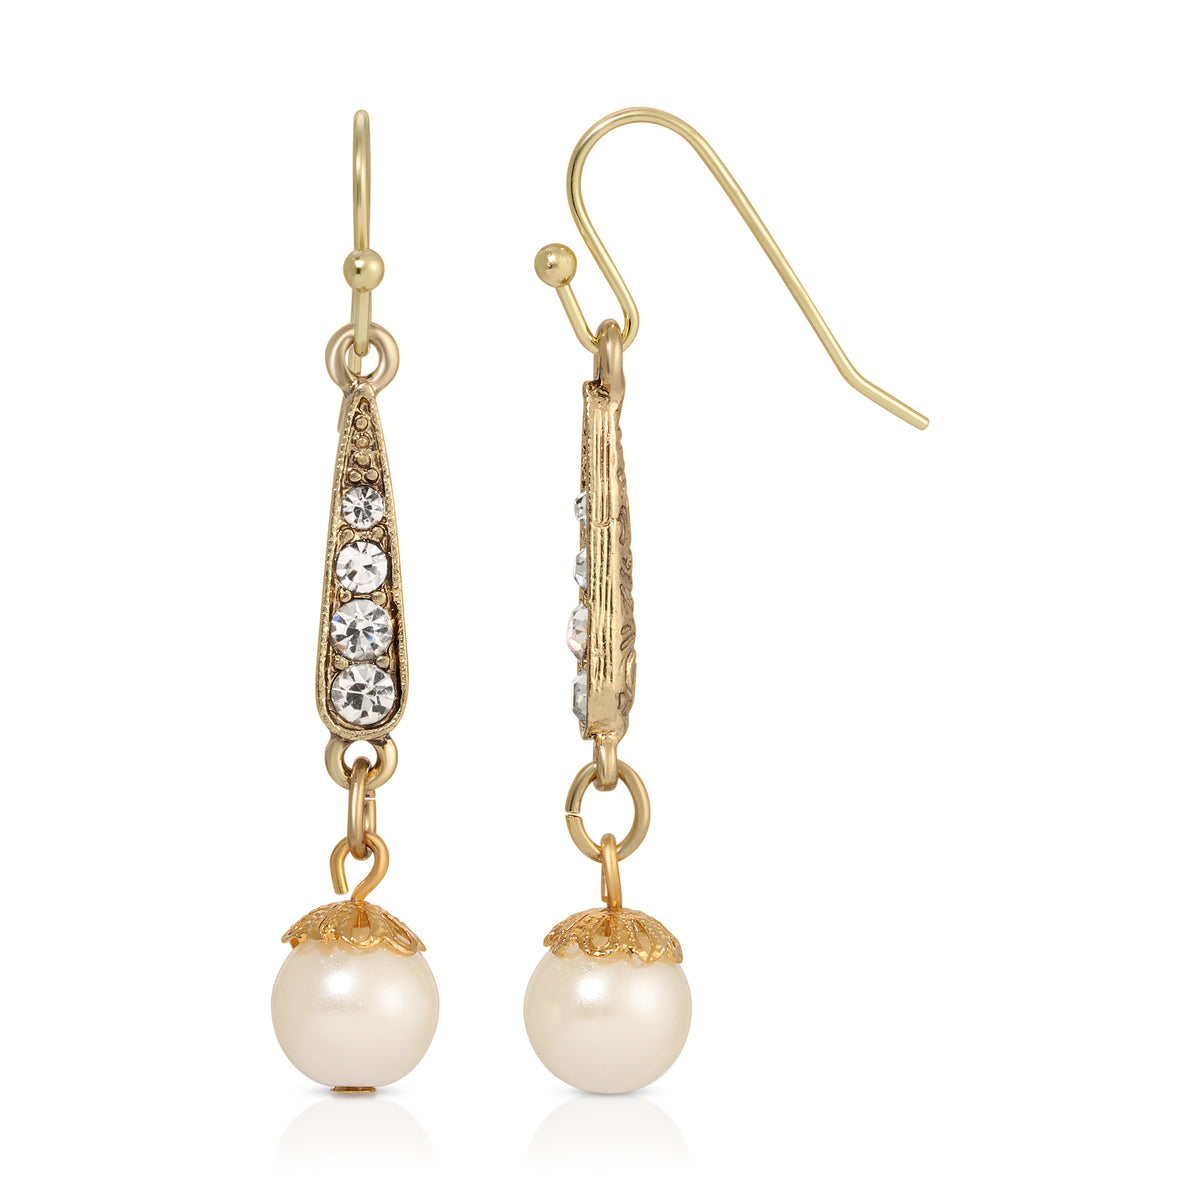 1928 Jewelry Deco Crystal Faux Pearl Dangling Earrings